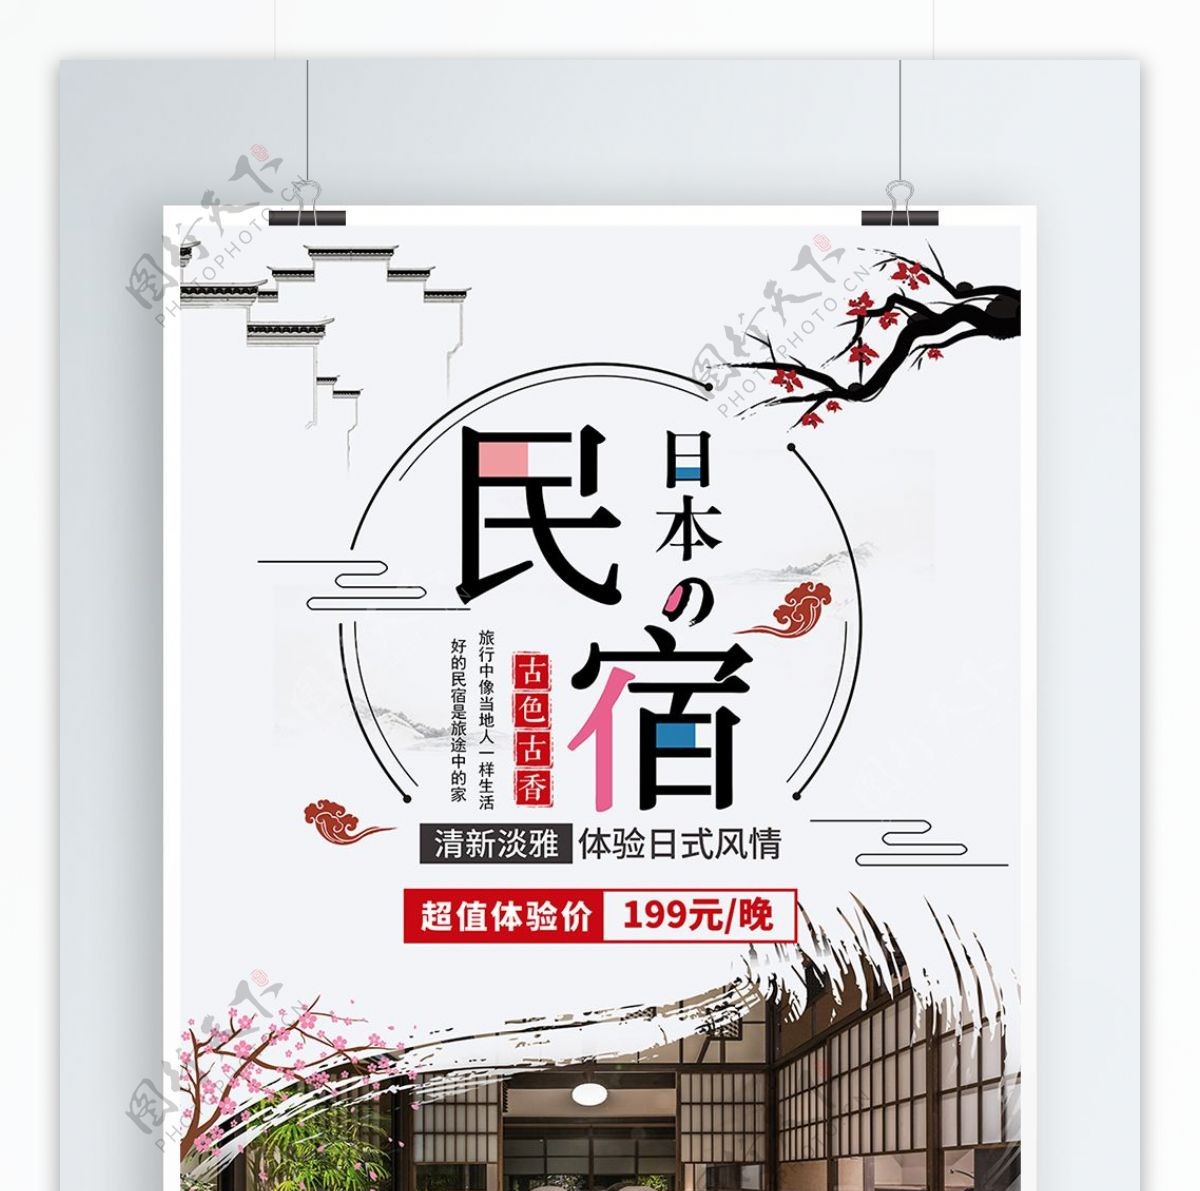 日本旅游简约中国风日式民宿宣传海报